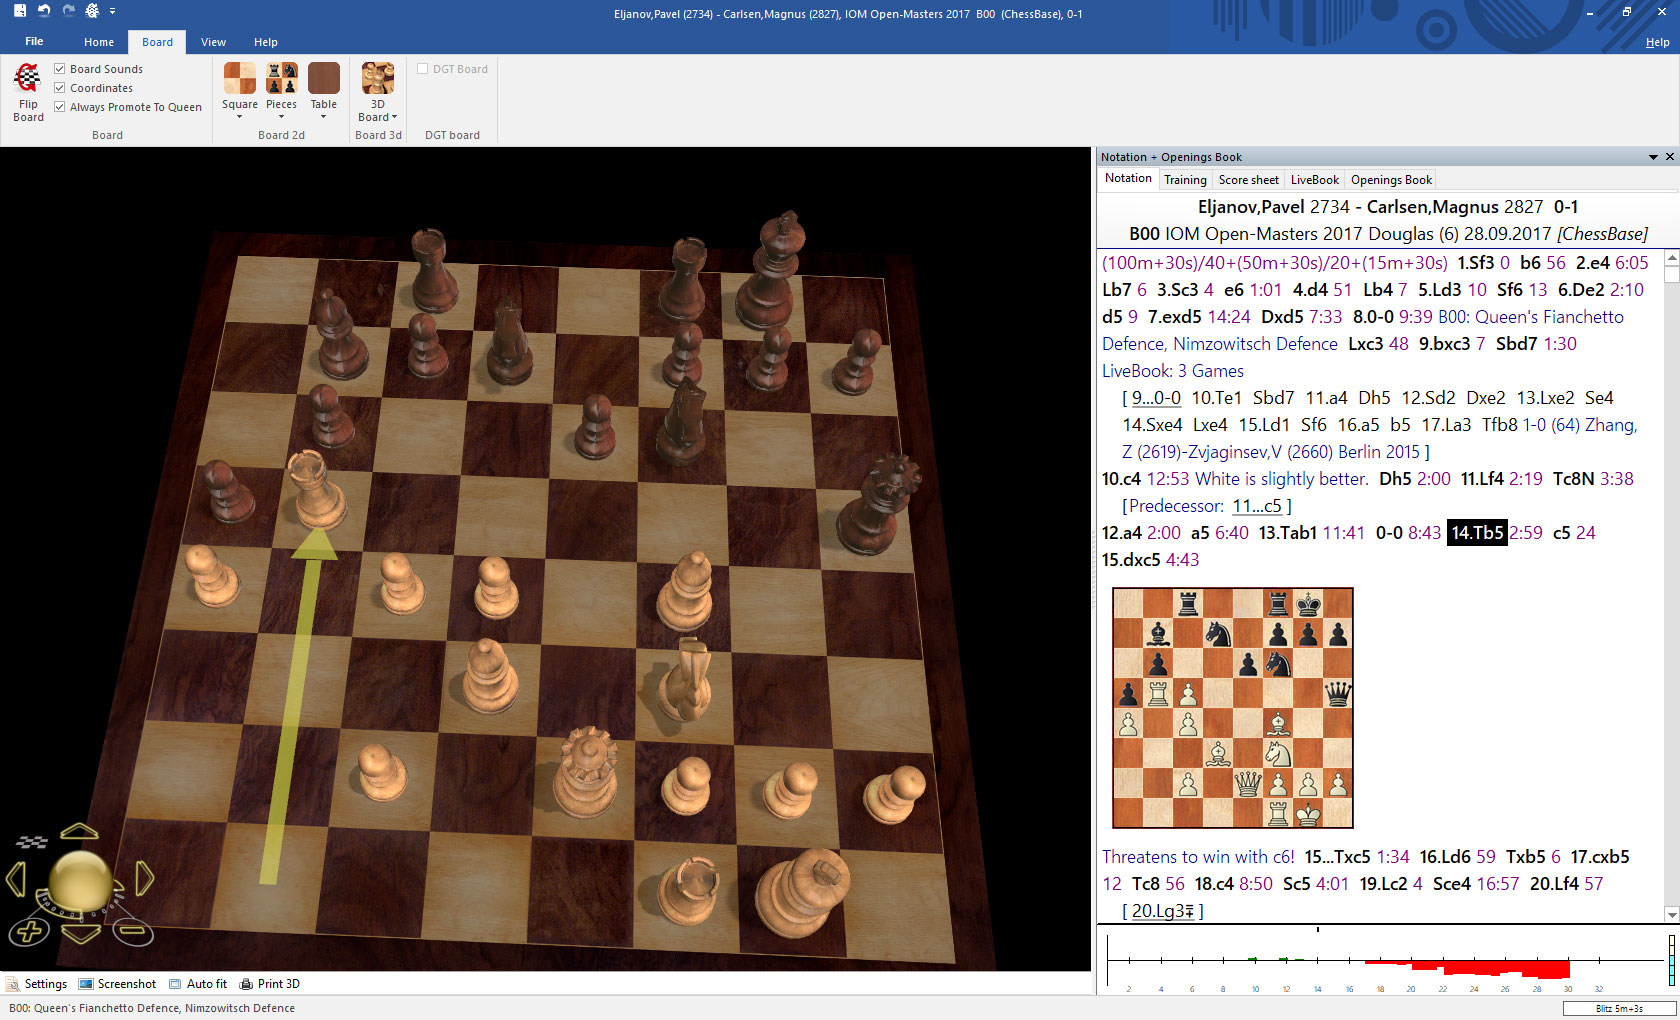 schach spielen online fritz